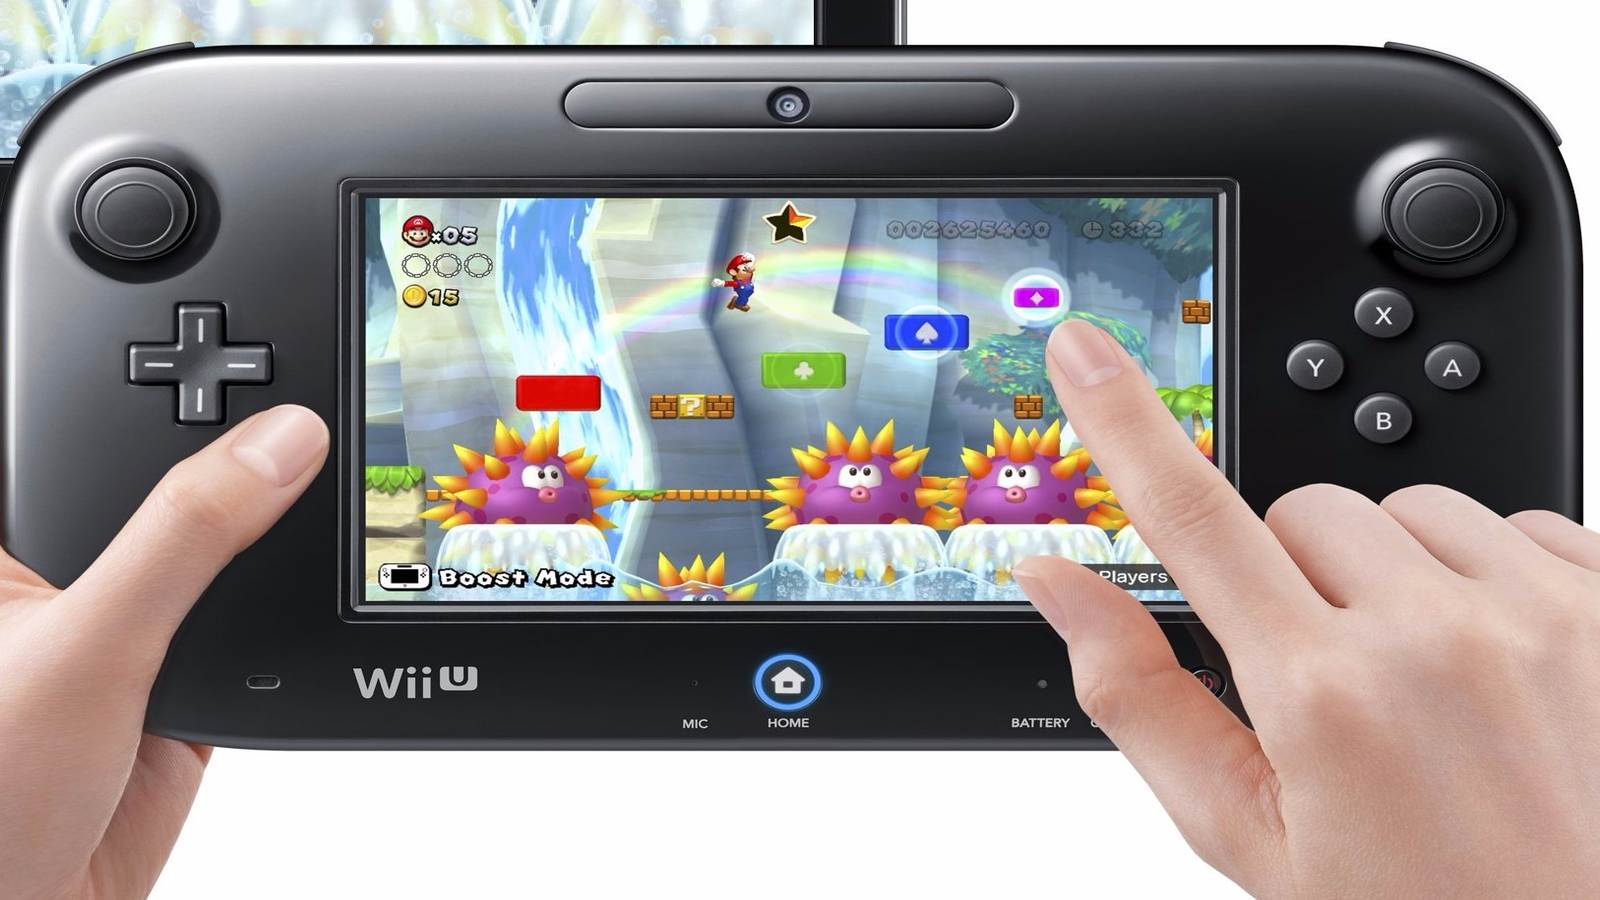 Roux tornado vergeetachtig Wii U 10 miljoen keer verkocht | Eurogamer.nl